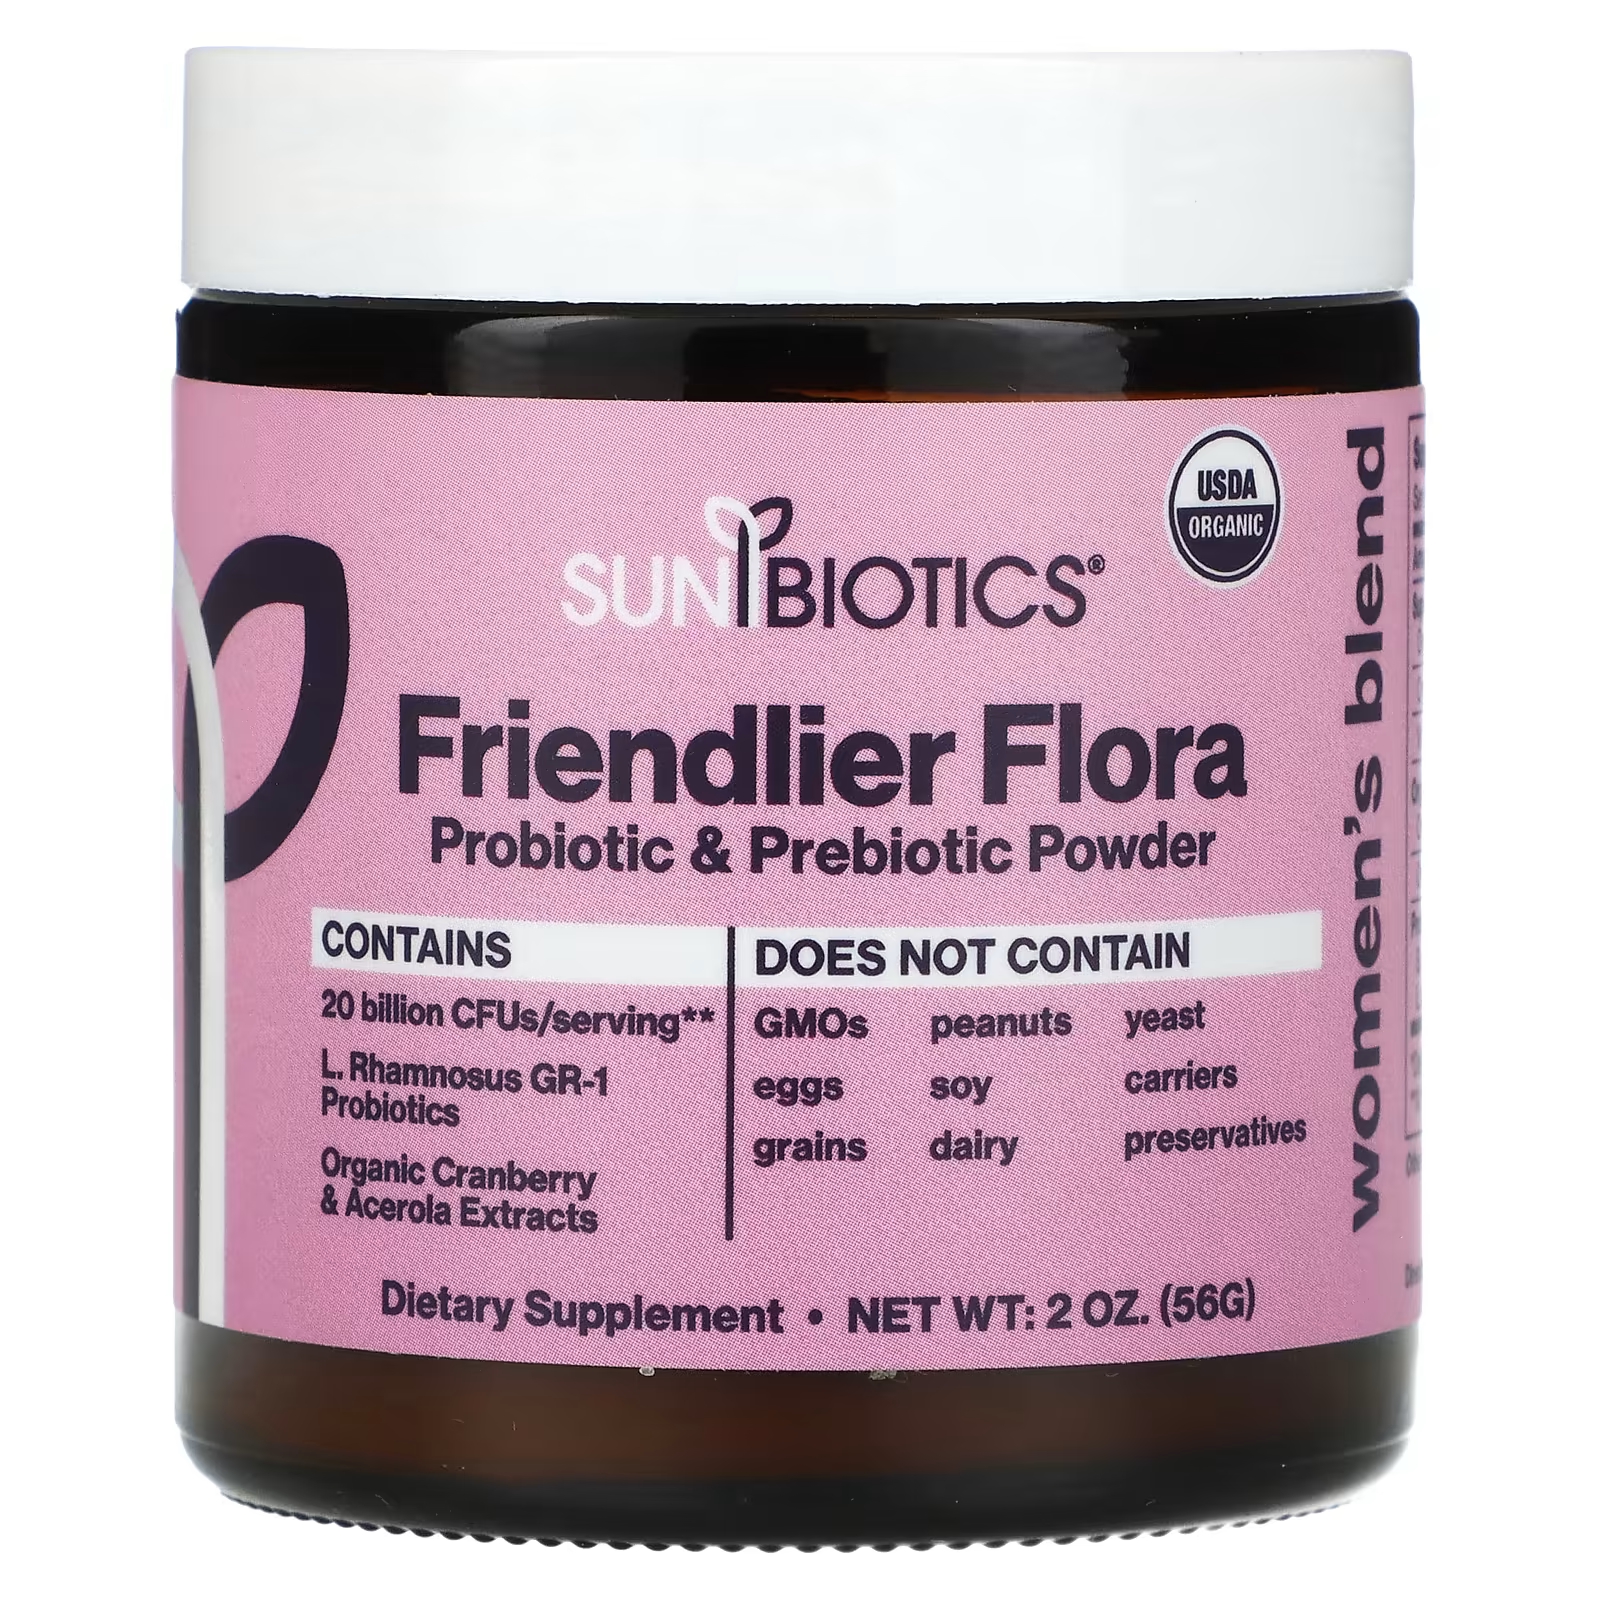 Пищевая добавка Sunbiotics Friendlier Flora женская смесь пробиотик и пребиотик в порошке, 56г